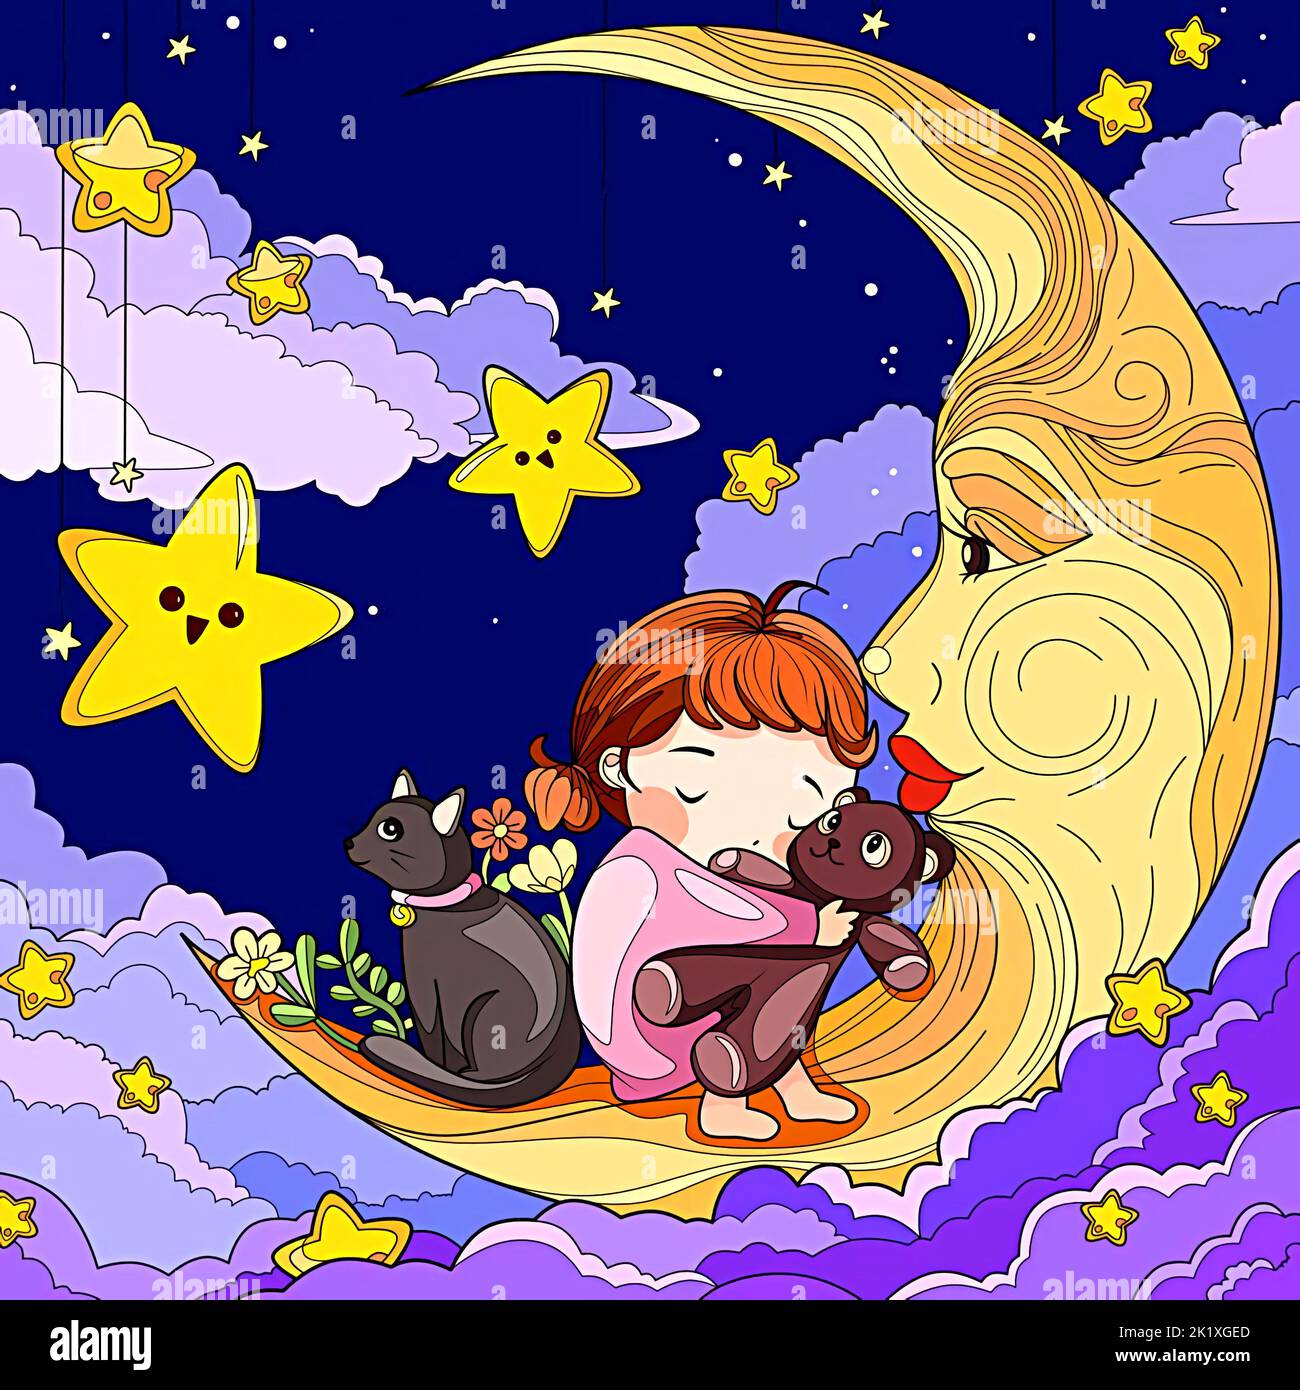 image de dessin animé d'une fille dormant sur un croissant de lune avec une poupée et son chat dans le ciel, les étoiles et les nuages la nuit Banque D'Images